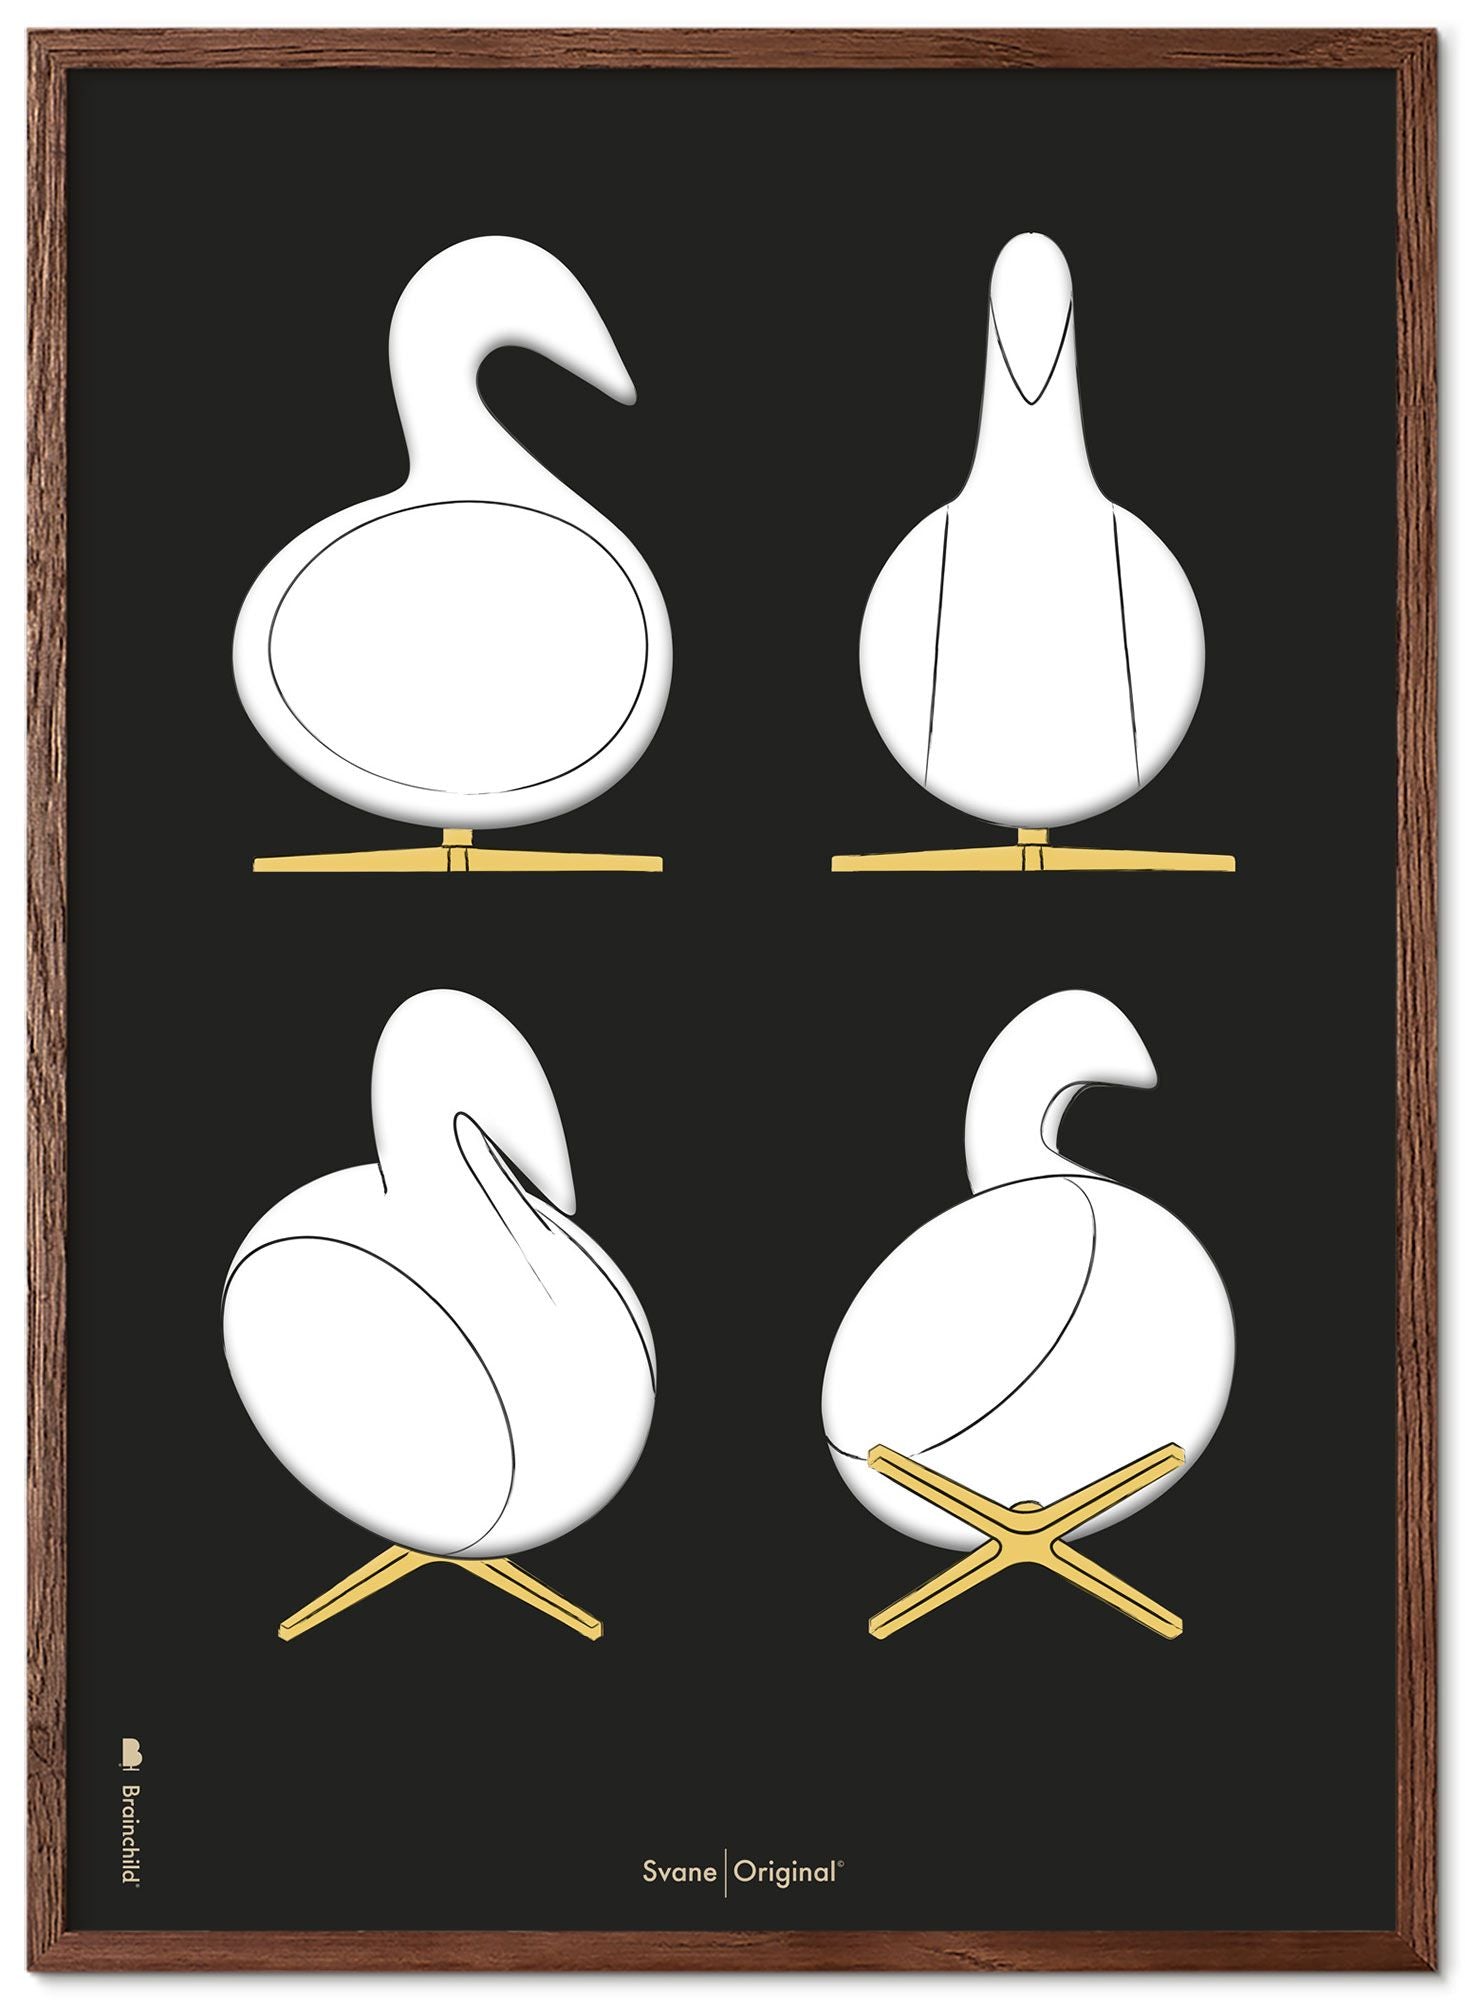 Brainchild Swan Design Schetsen Poster Frame Gemaakt Van Donker Hout 70x100 Cm, Zwarte Achtergrond